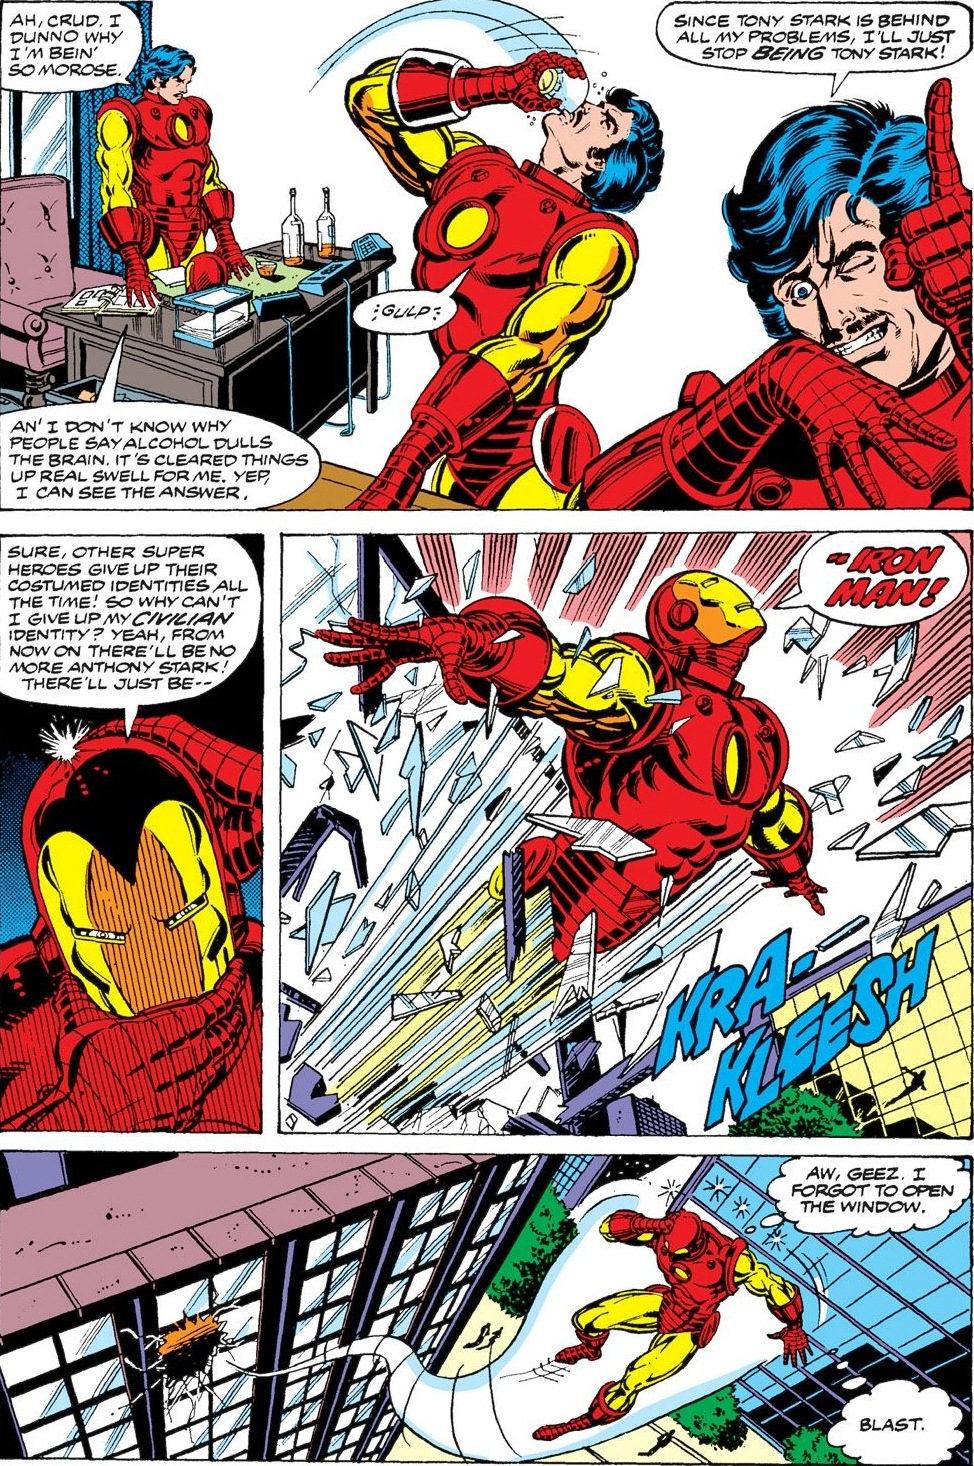 Iron Man (Vol. 1) #128 (1979)